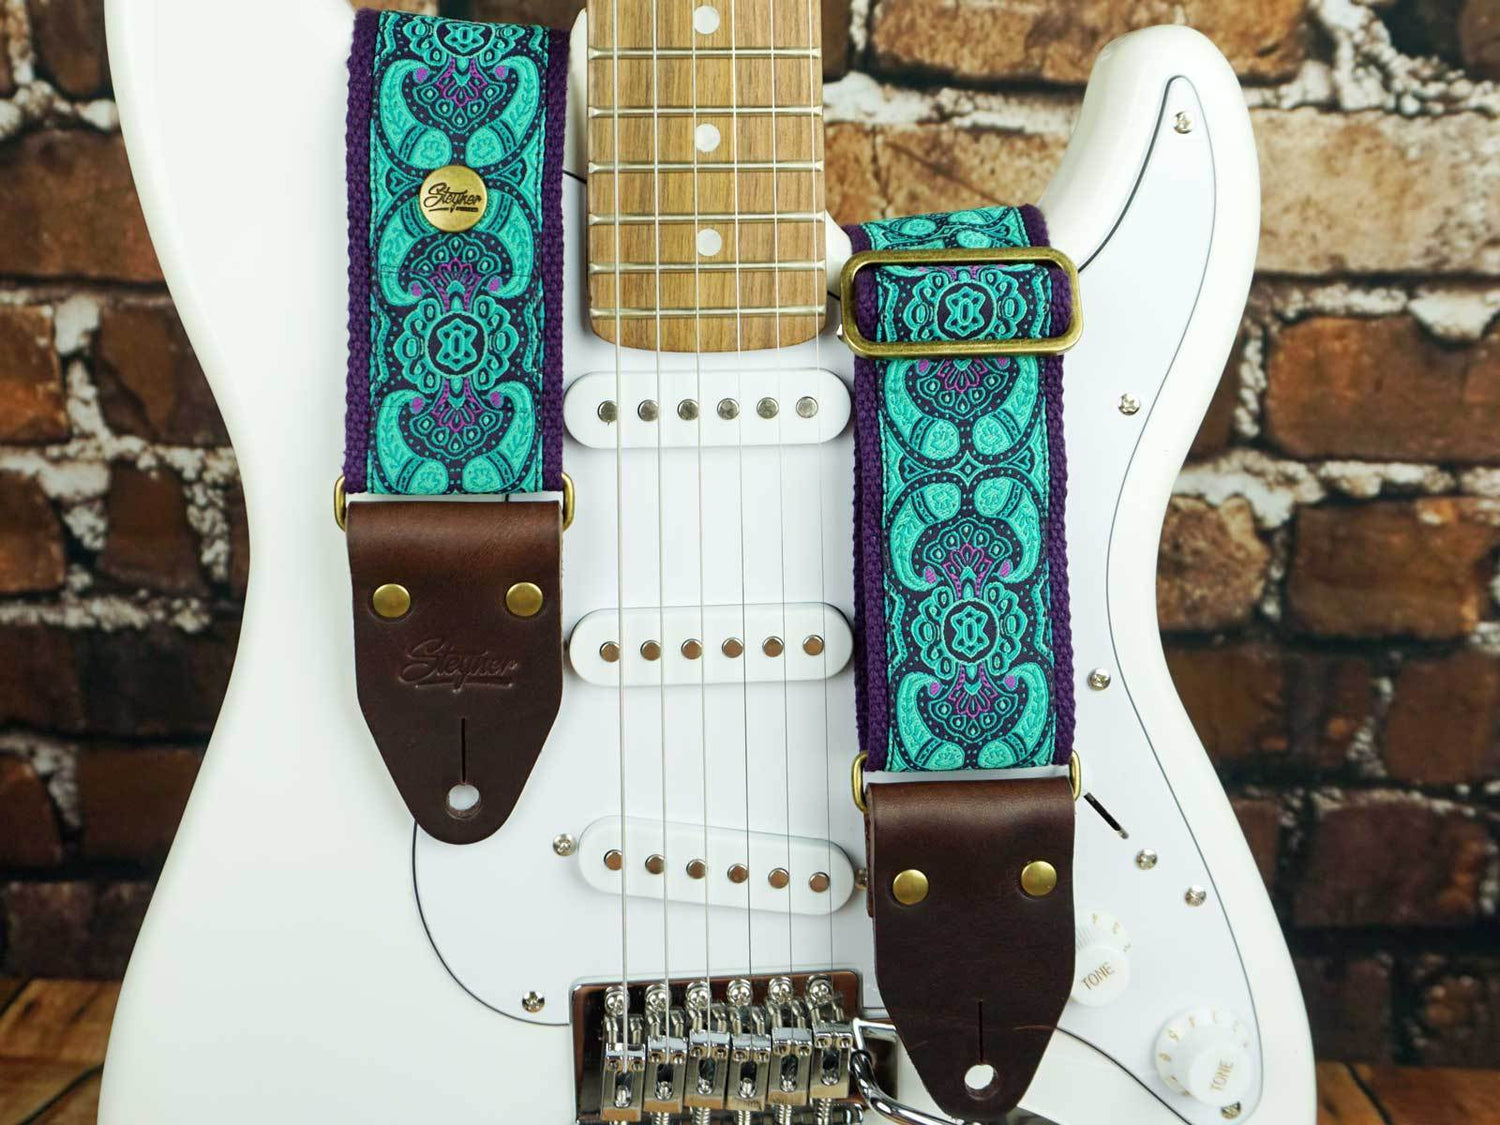 Retro Gitarrengurt bunt mit floralem Muster auf einer e Gitarre